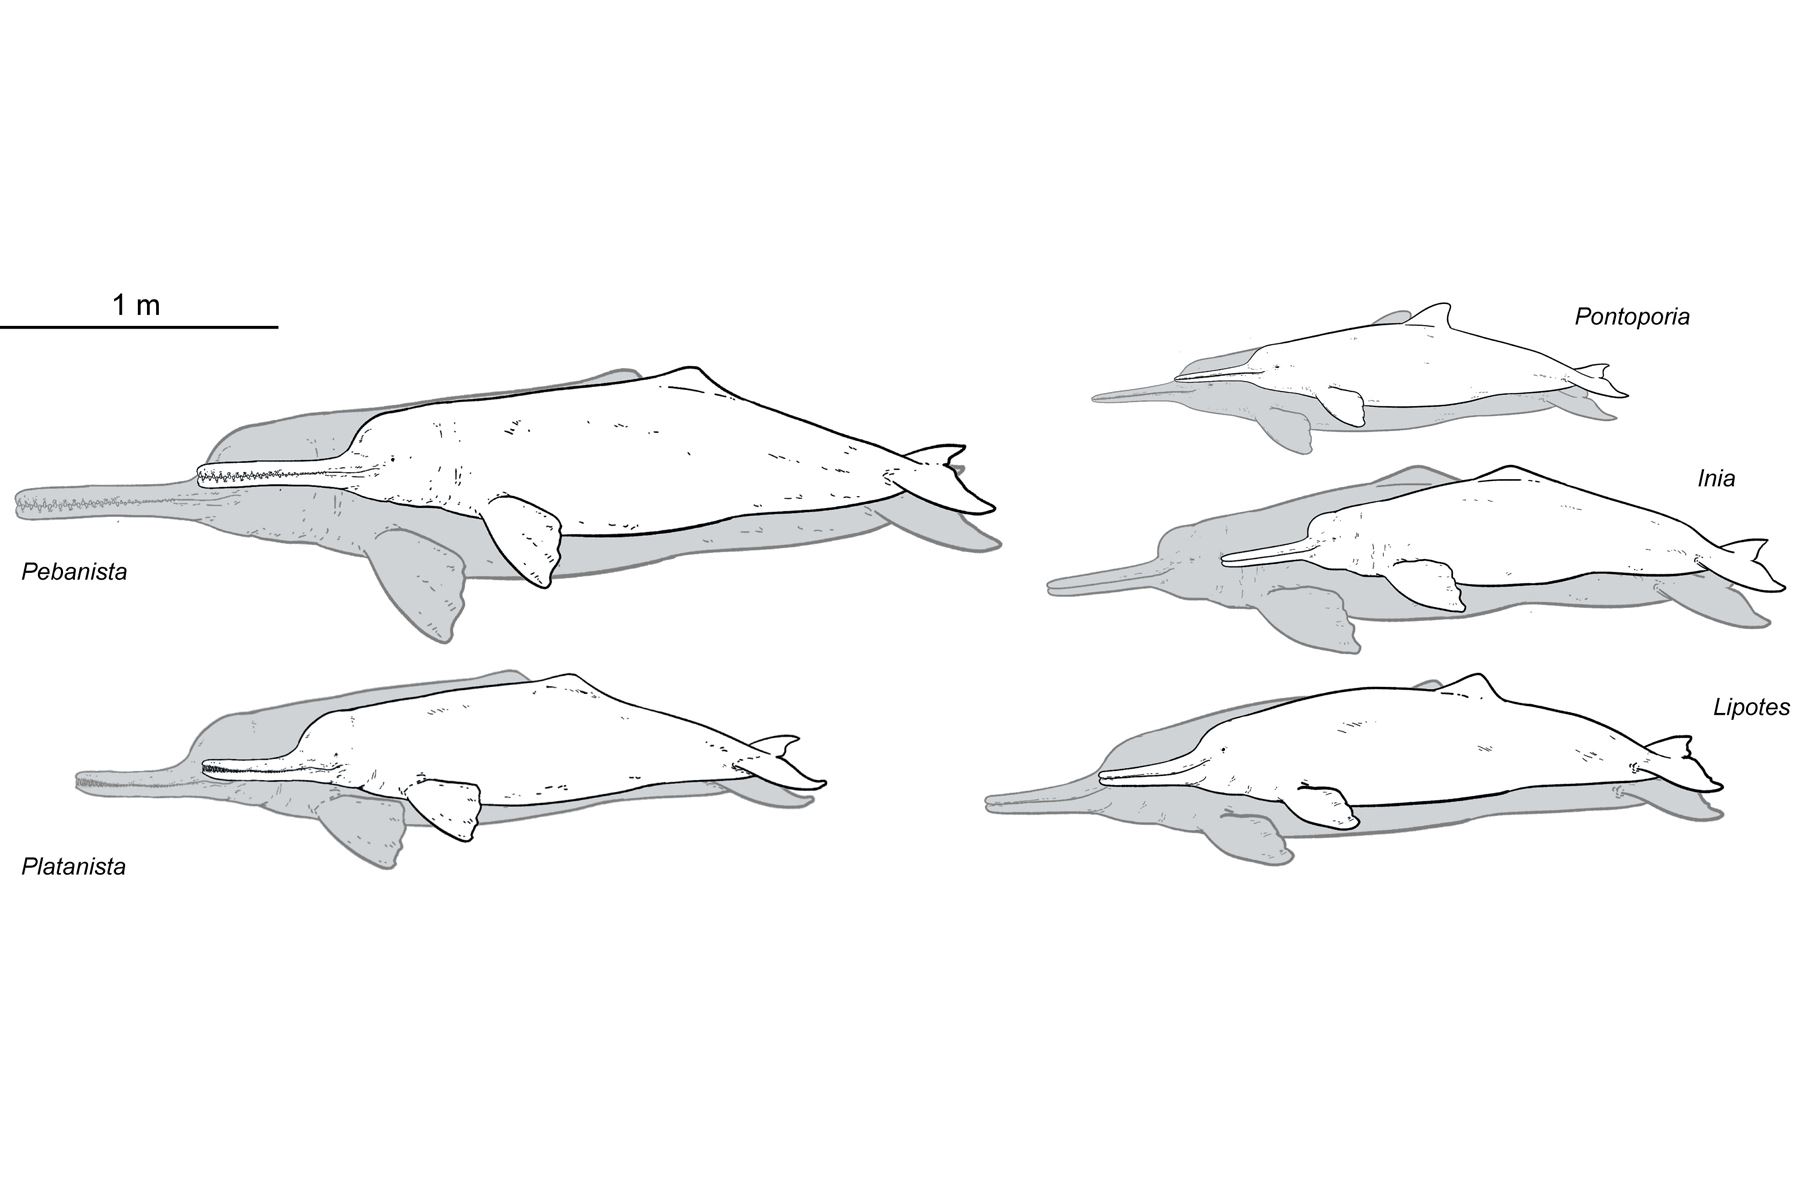 Comparación de tamaños de diferentes delfines de río, que incluyen al 'Pebanista yacuruna', 'Platanista gangetica', 'Pontoporia blainvillei', 'Inia geoffrensis' y 'Lipotes vexillifer'. Los dibujos con un relleno blanco denotan los tamaños mínimos reconstruidos o registrados, y los dibujos con relleno gris representan los tamaños máximos reconstruidos/registrados. Crédito: Jaime Bran y Aldo Benites-Palomino.